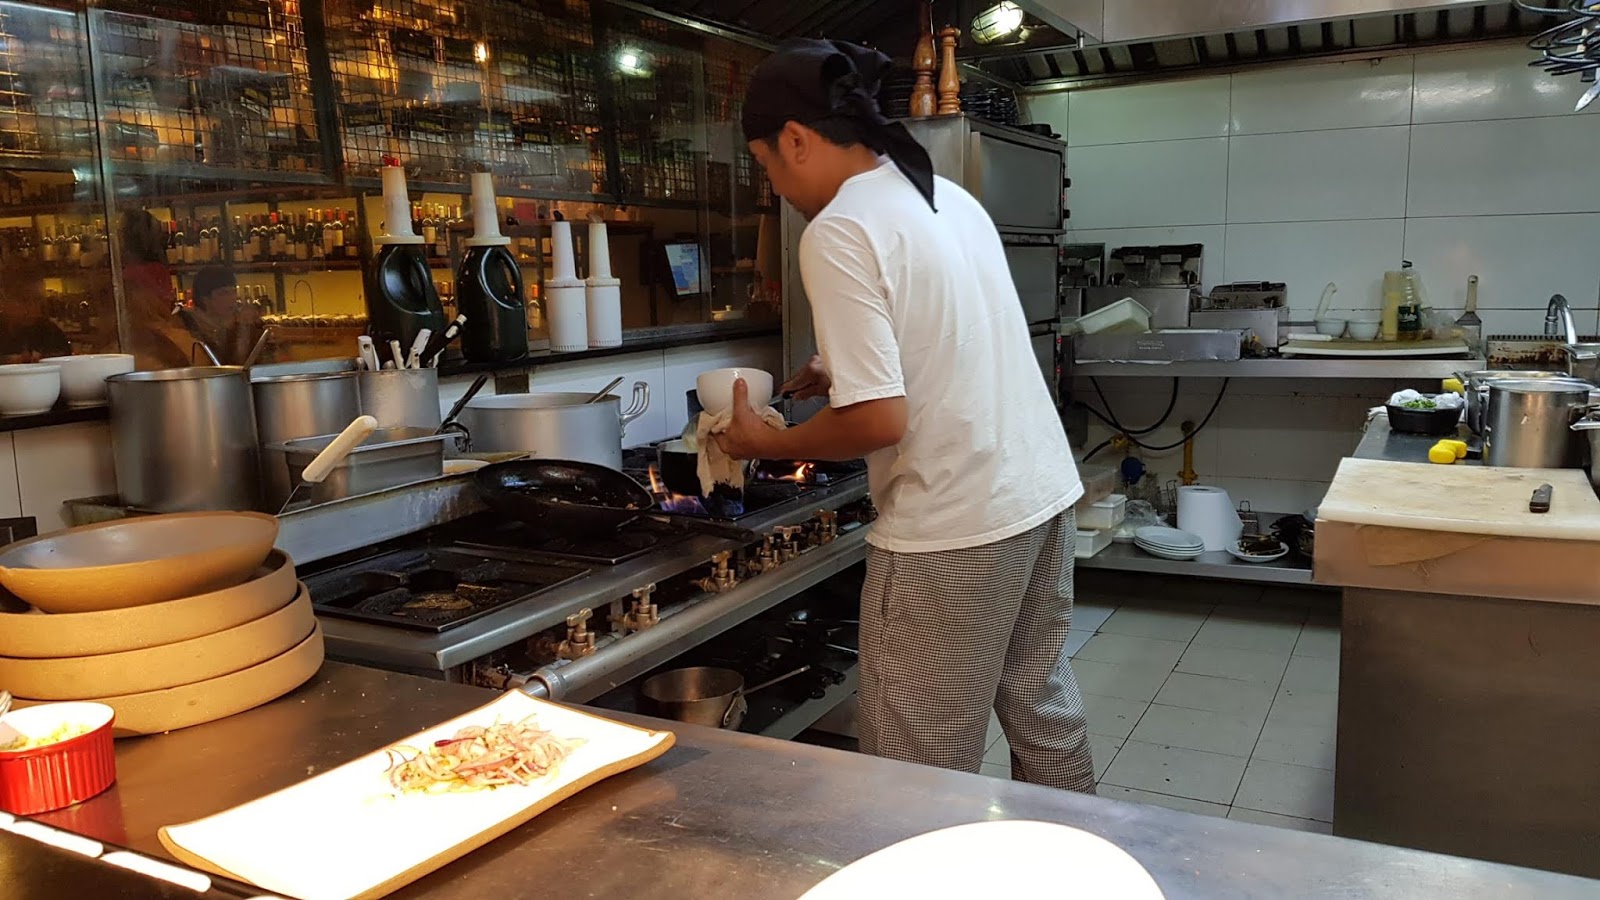 Blog Apaixonados por Viagens - Onde Comer no Rio - Mercearia da Praça - Ipanema